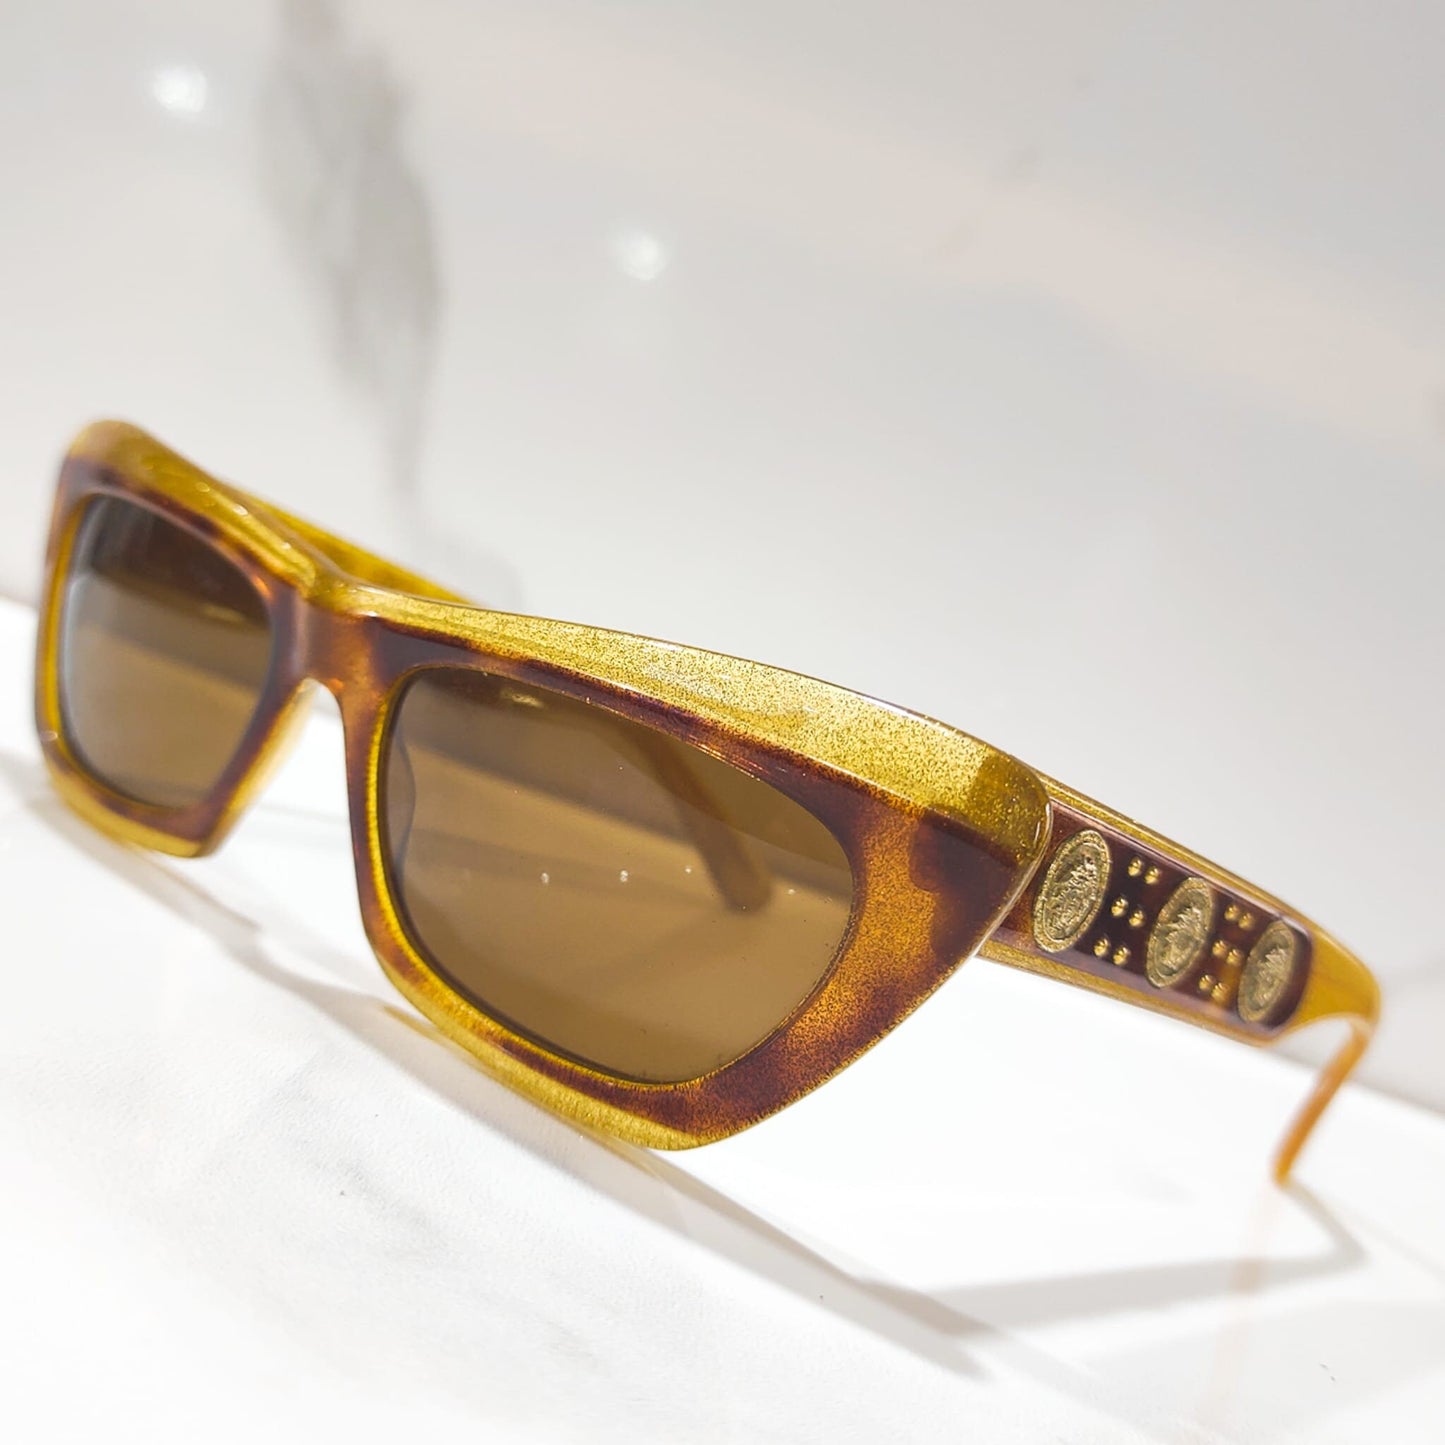 Gianni Versace S18 vintage sunglasses brille lunette